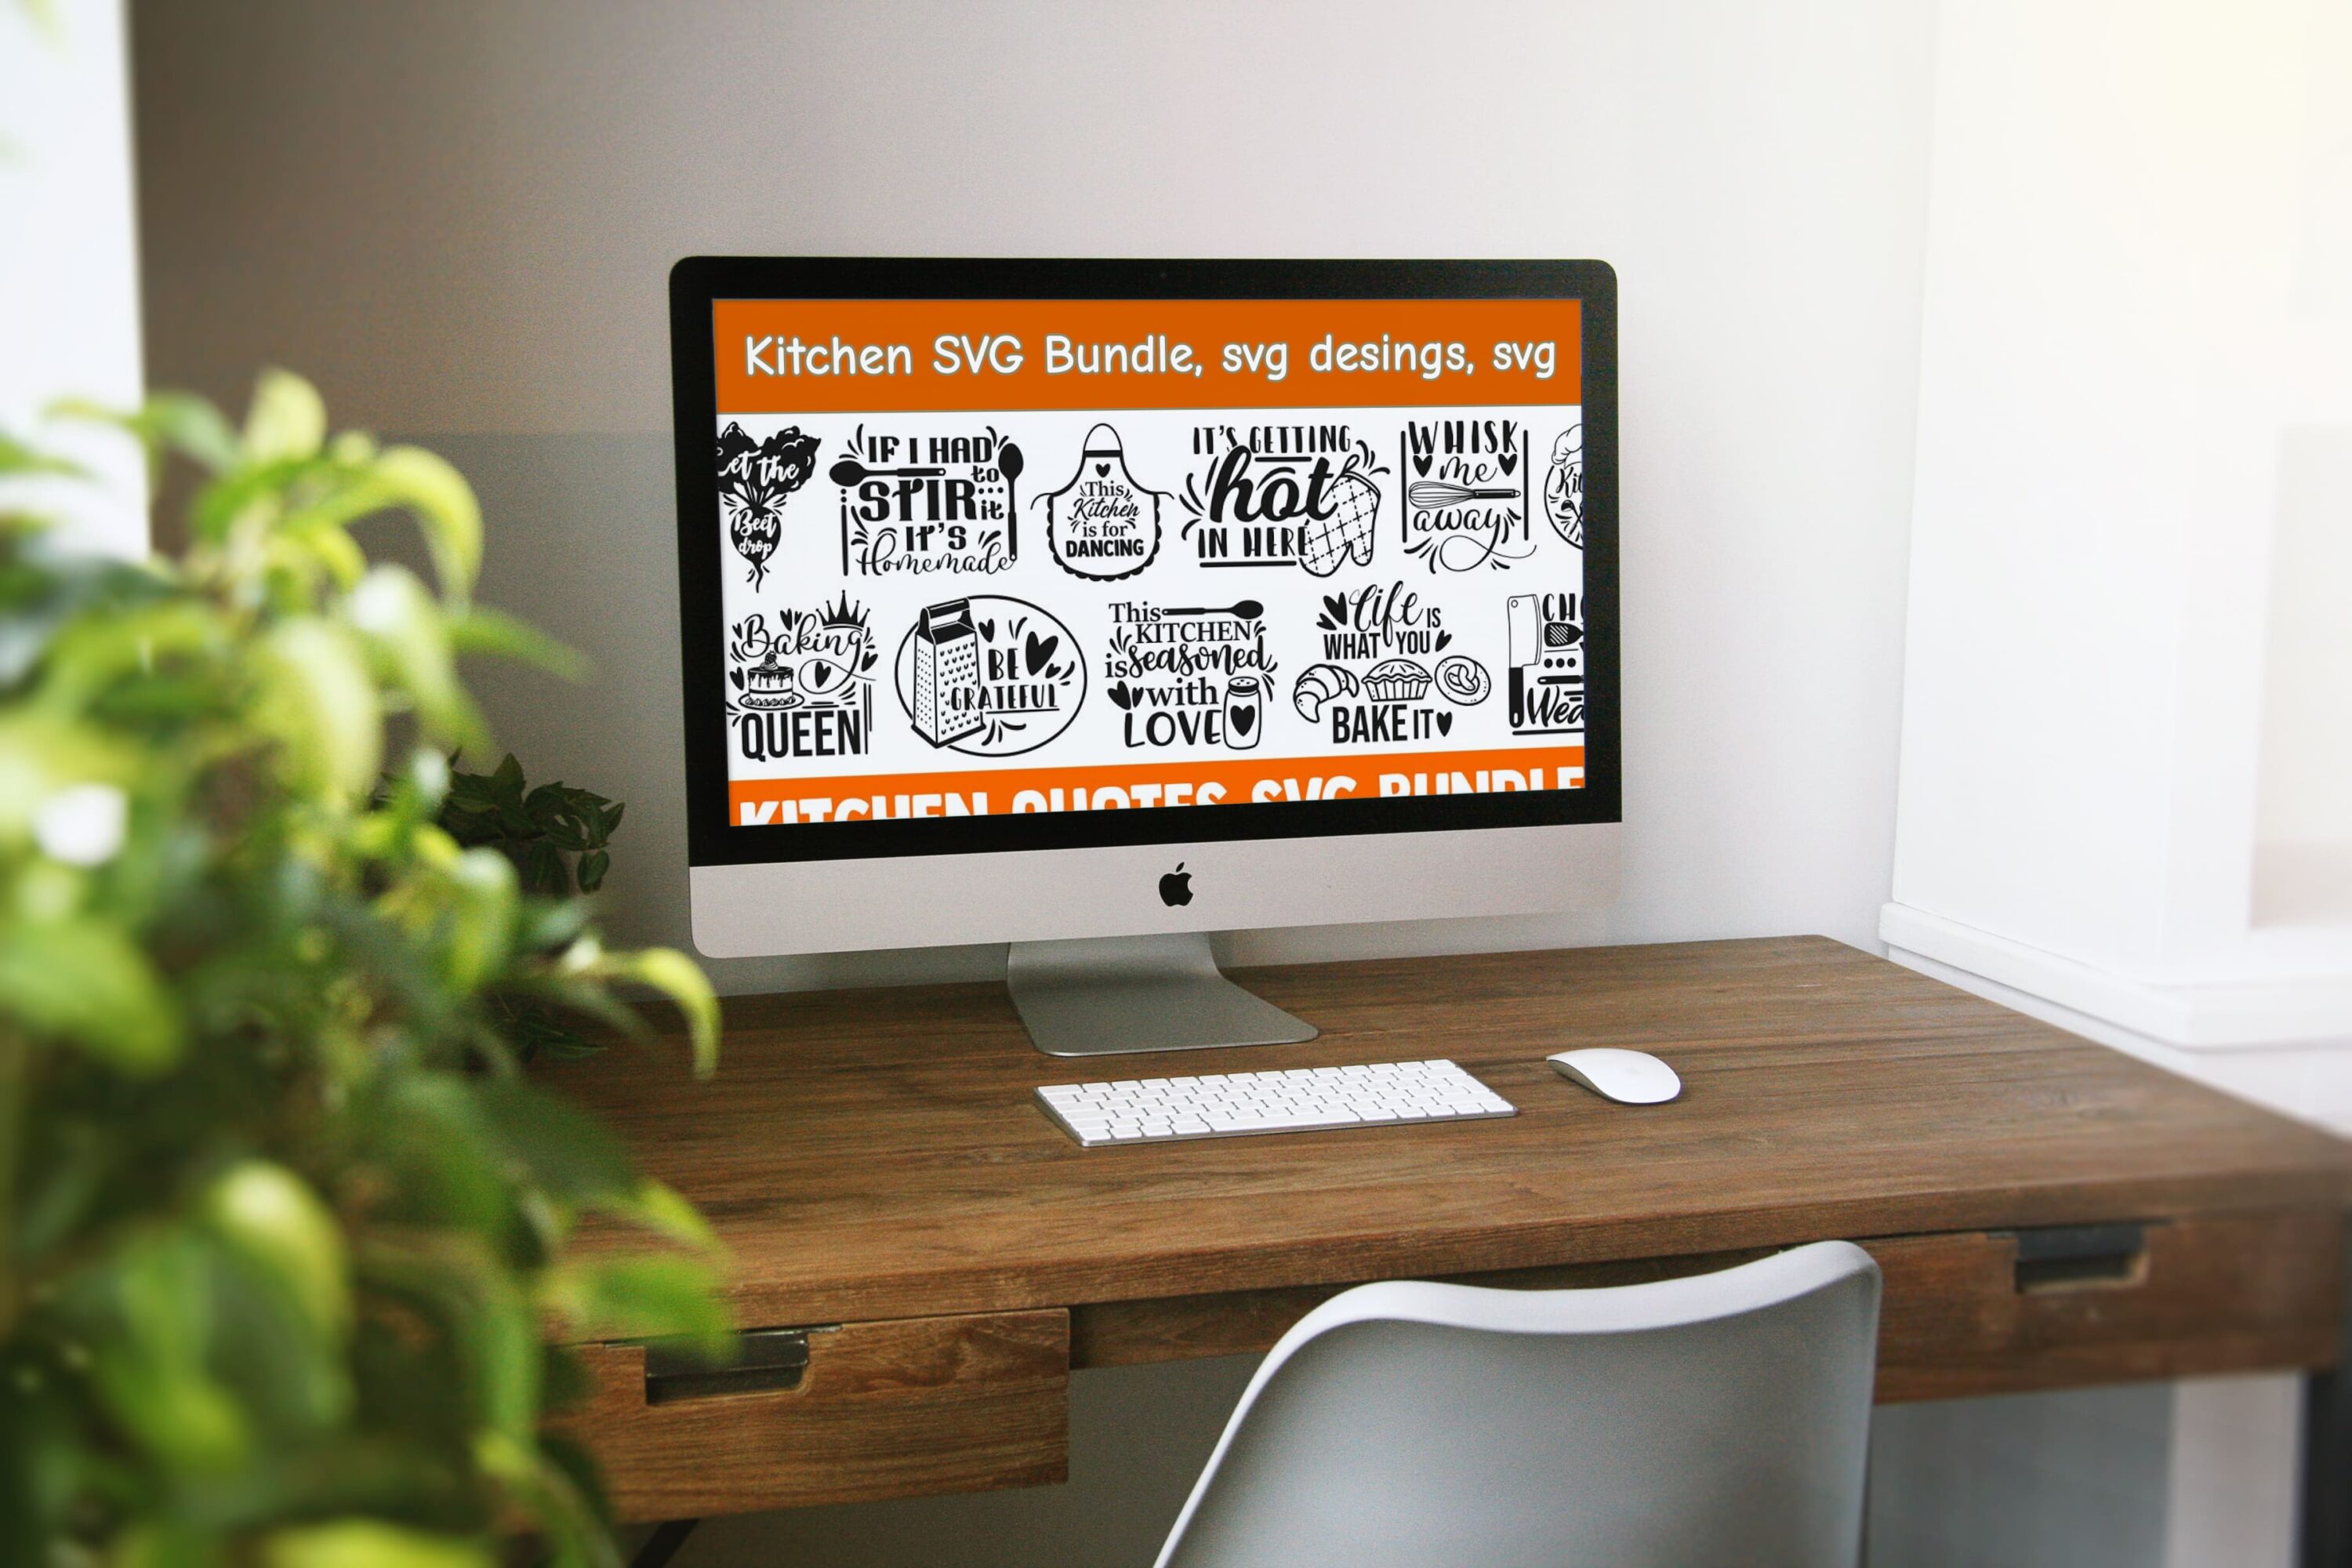 Kitchen SVG Bundle, svg desings, svg - desktop.